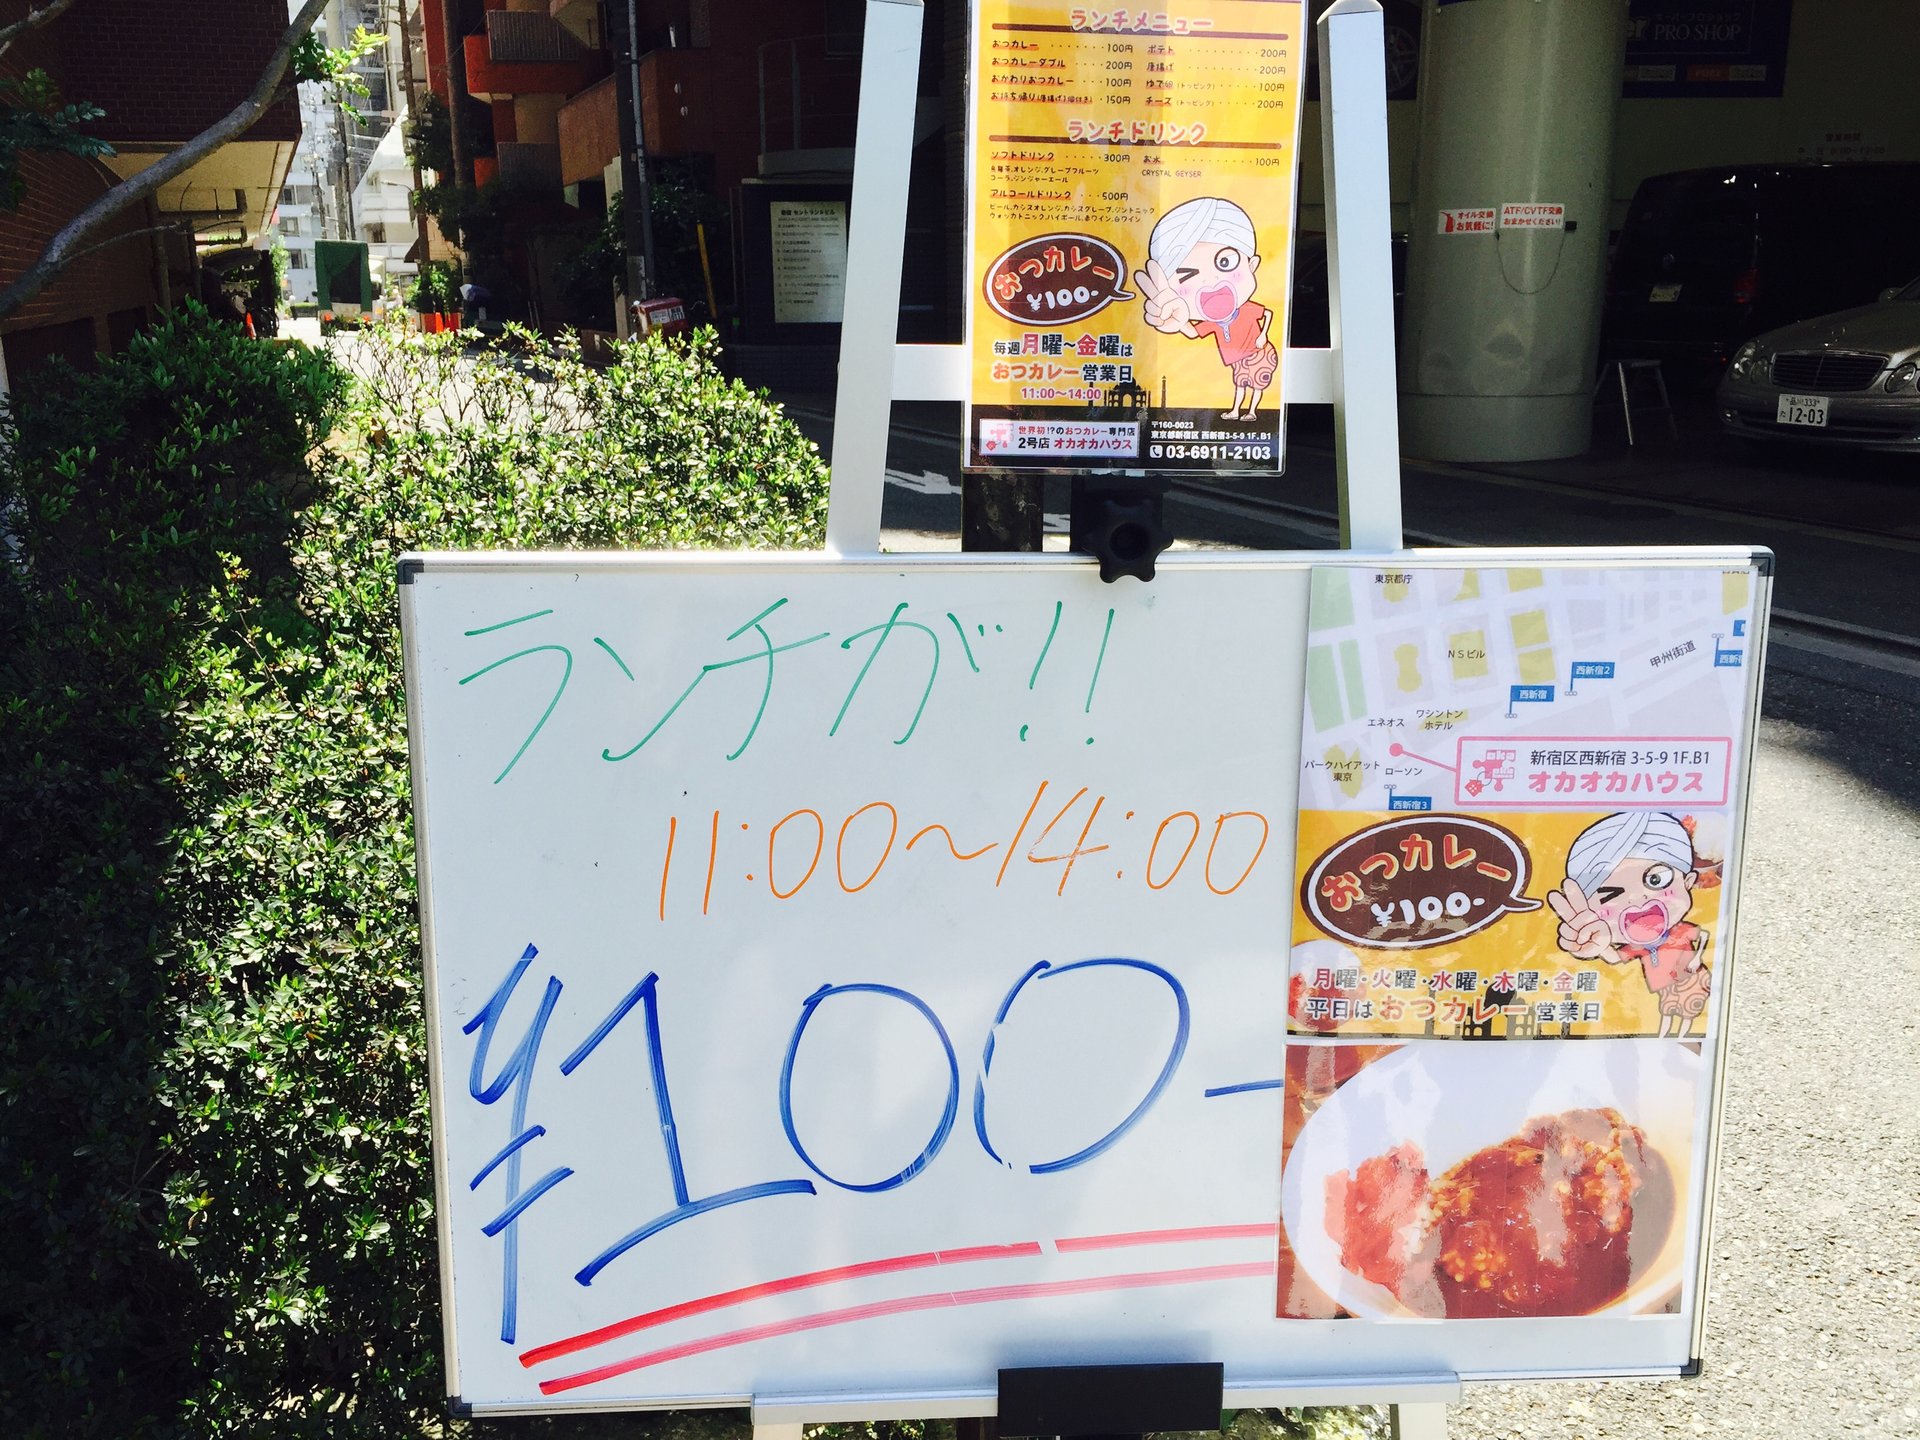 ウソ！？カレーが100円！東京で一番安くランチが食べられるお店【新宿・オカオカハウス】